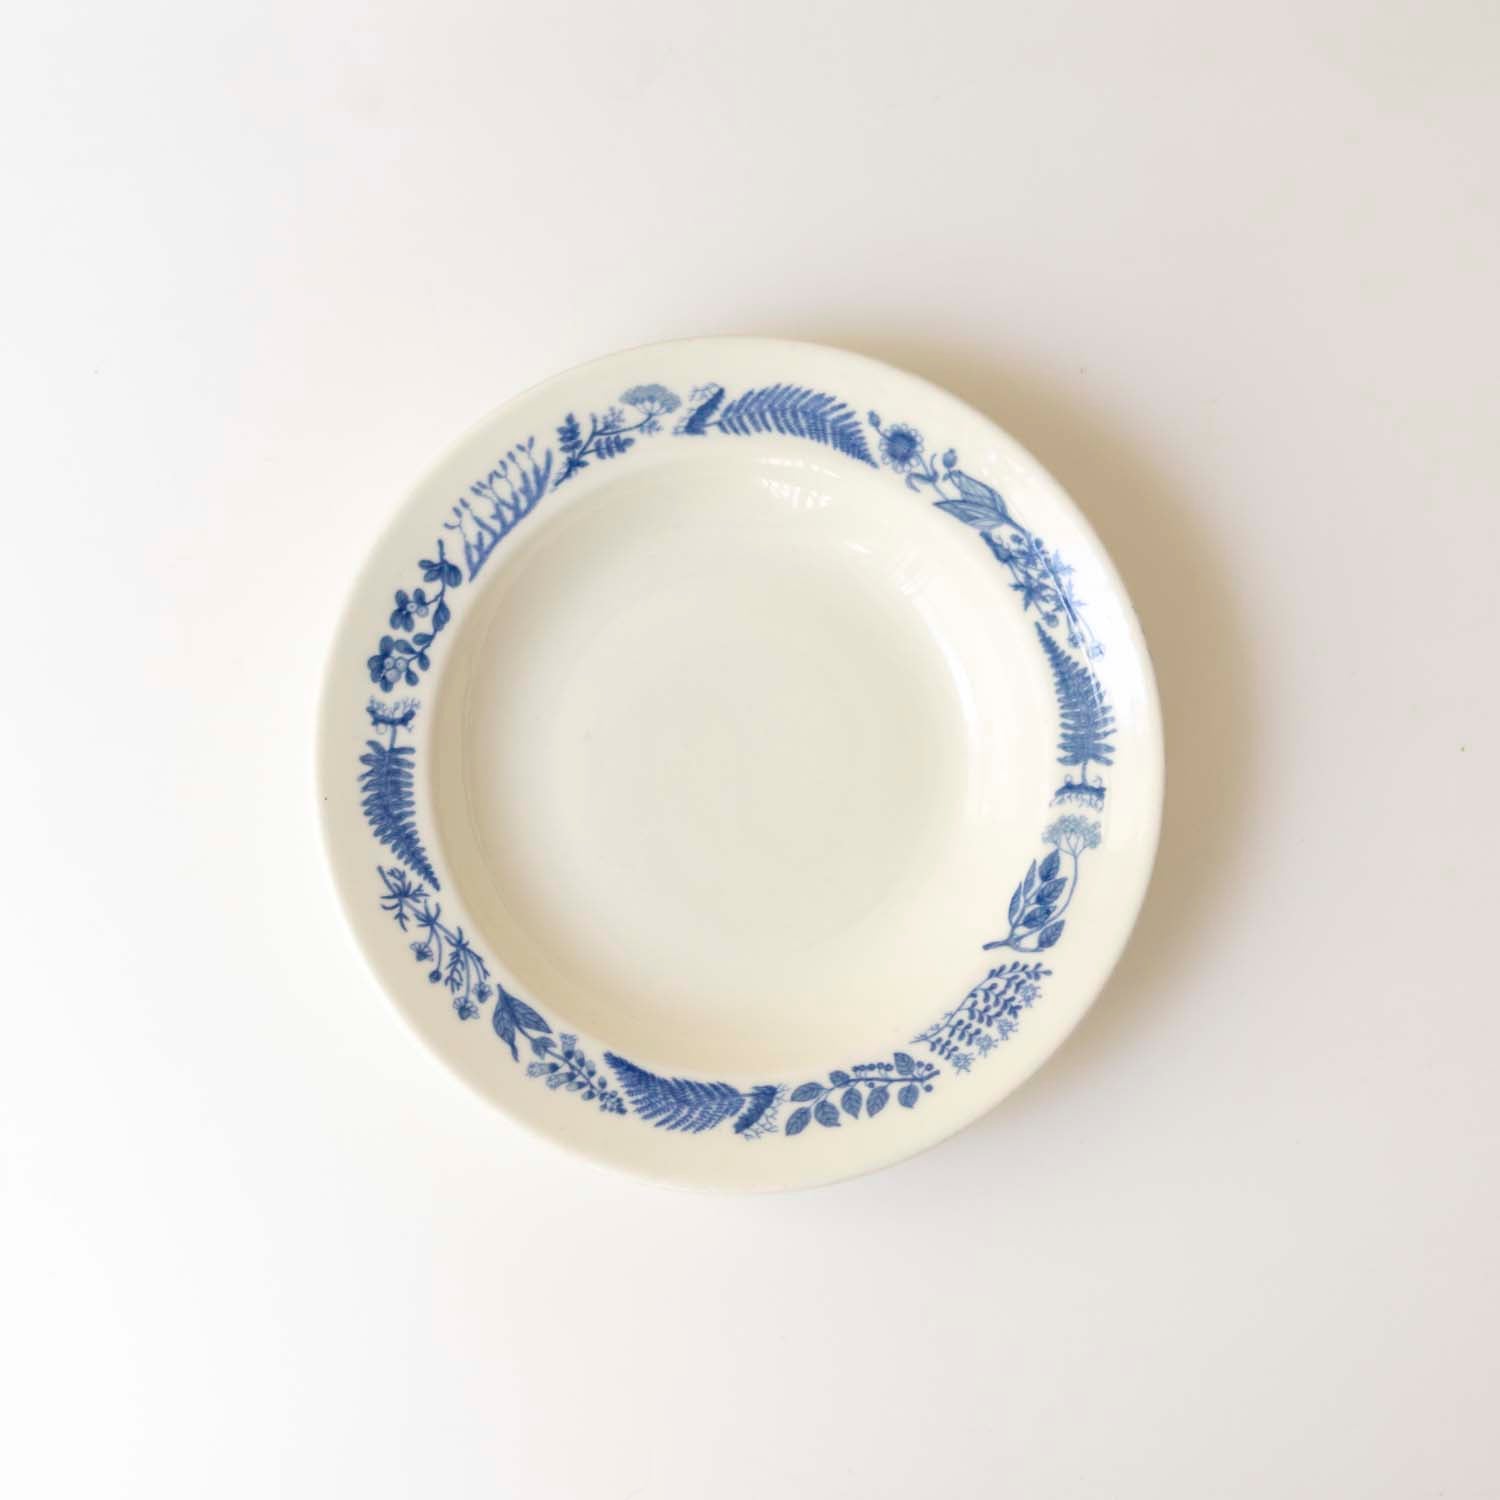 【Vintage】Stig Lindberg Medicinalväxter Soup Plate20cm blue